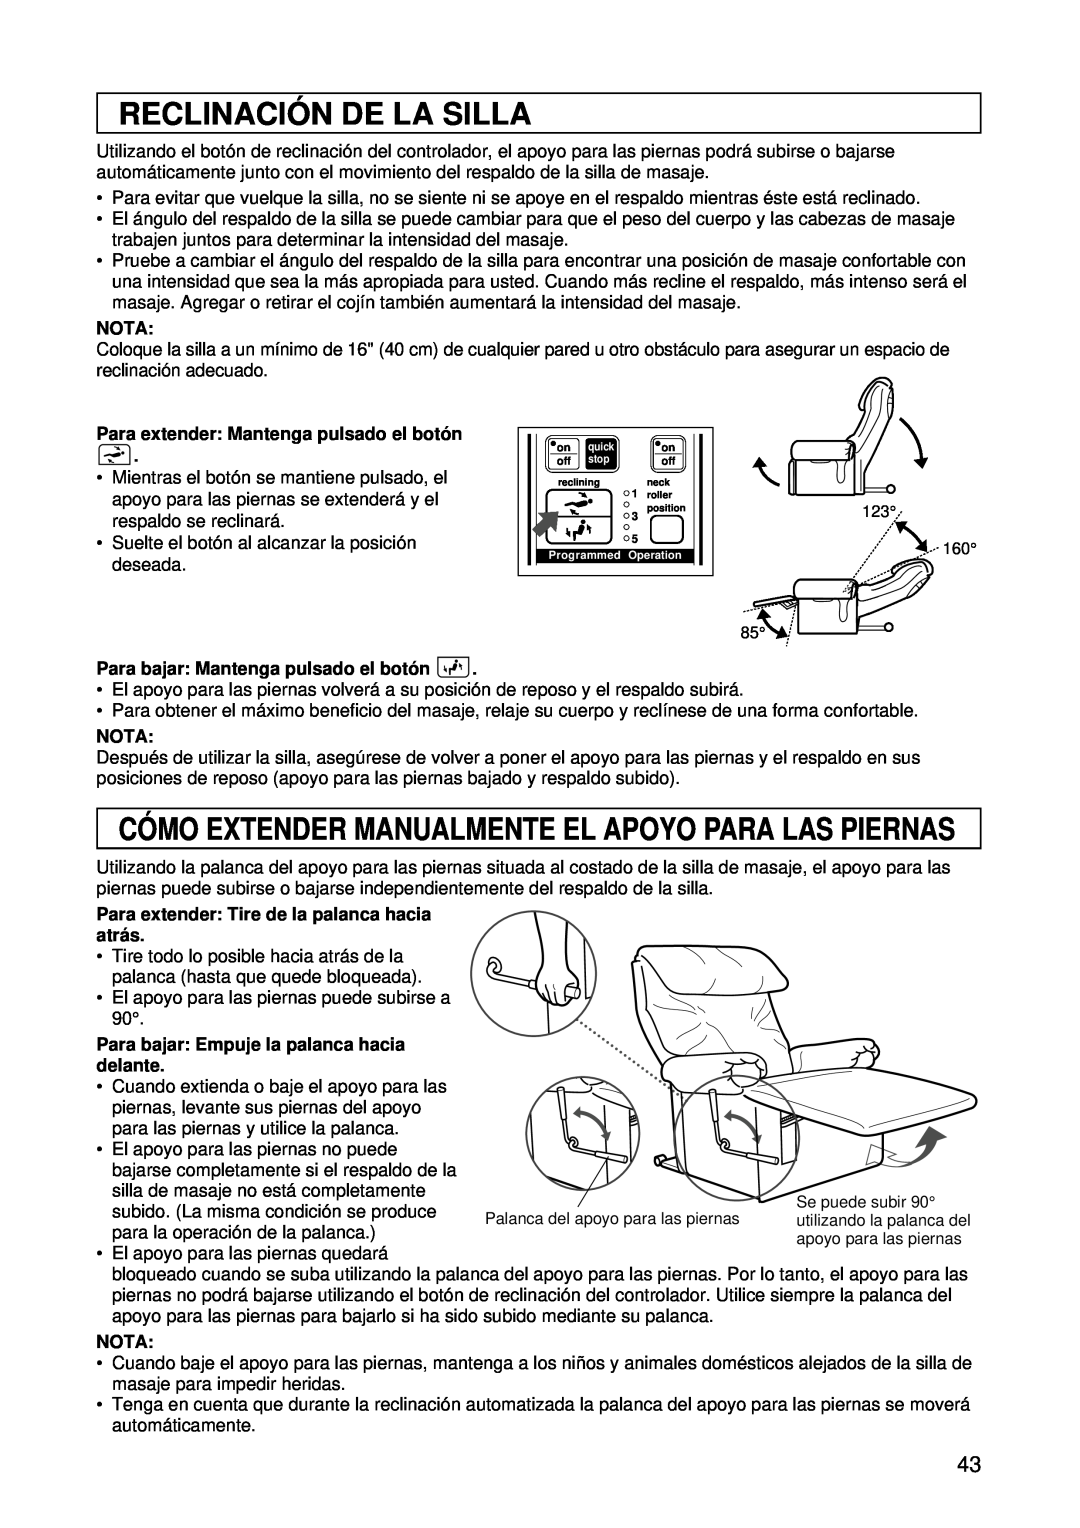 Panasonic EP1015 manuel dutilisation Reclinació N De La Silla, Nota, Para extender Mantenga pulsado el botó n, delante 